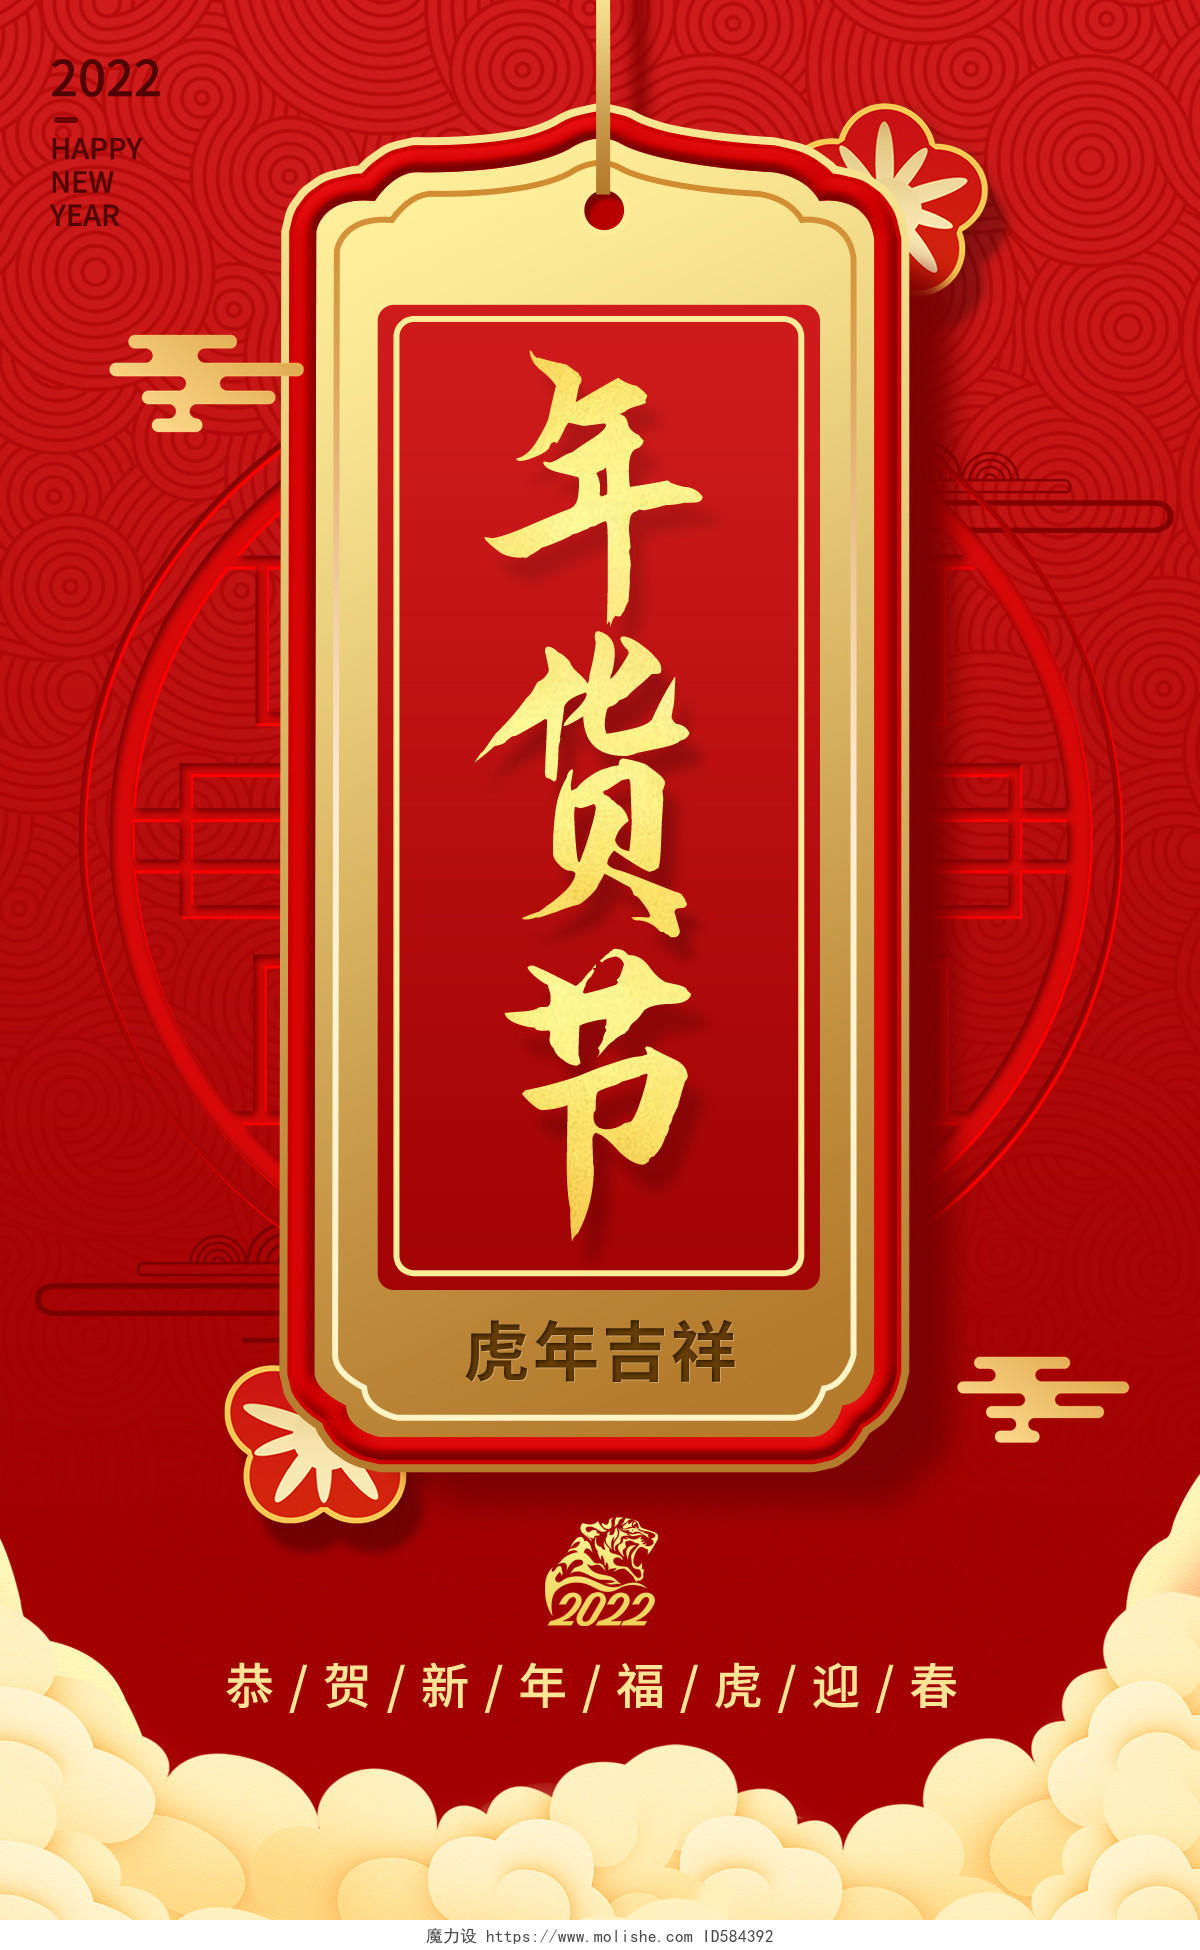 红色大气年货节新年春节文案海报psd年货节文案类海报banner